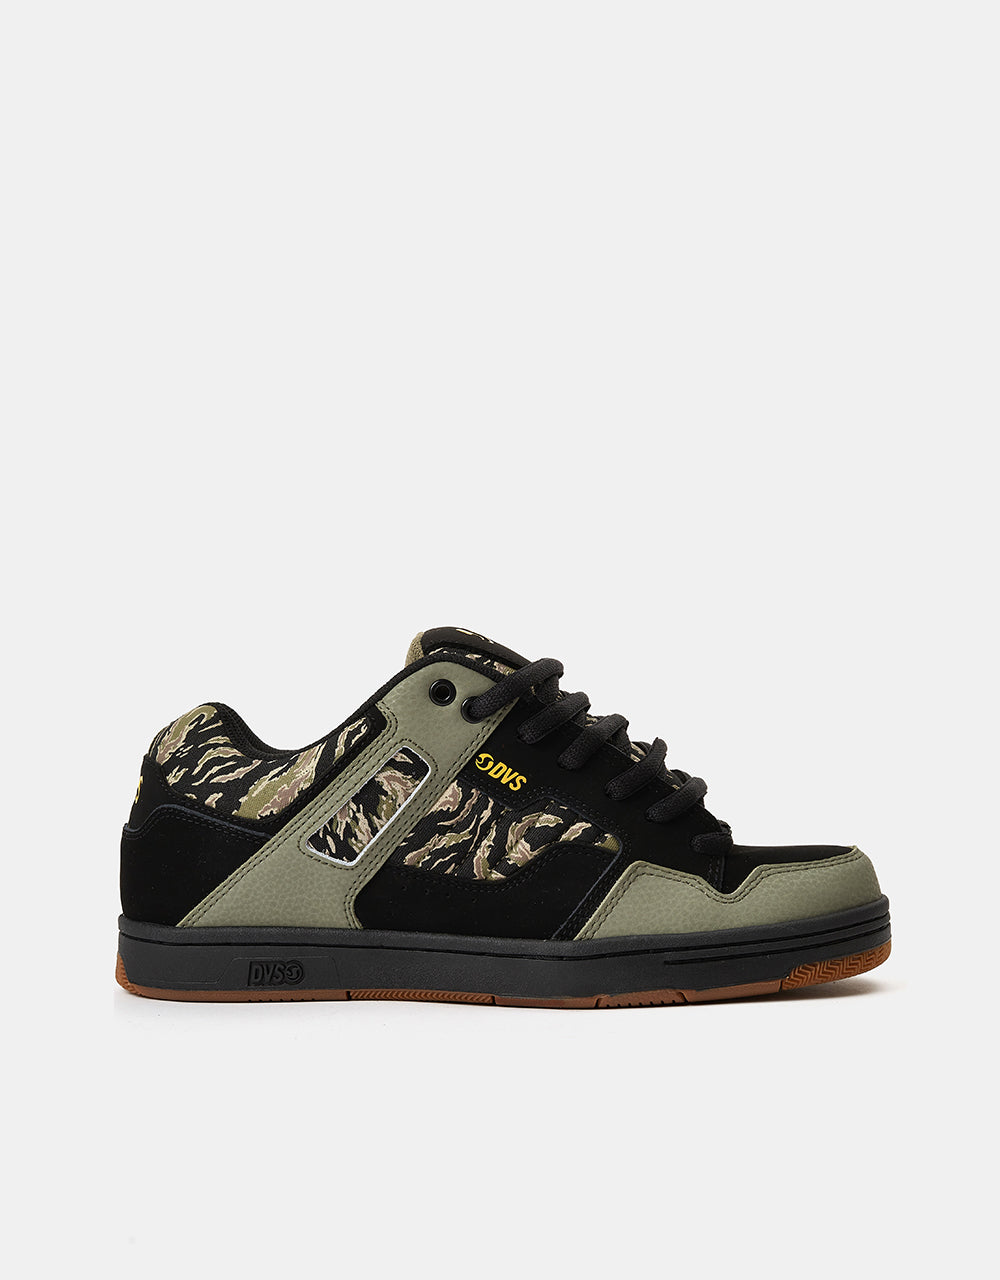 DVS Enduro 125 Skate Shoes - Black/Jungle Camo Nubuck